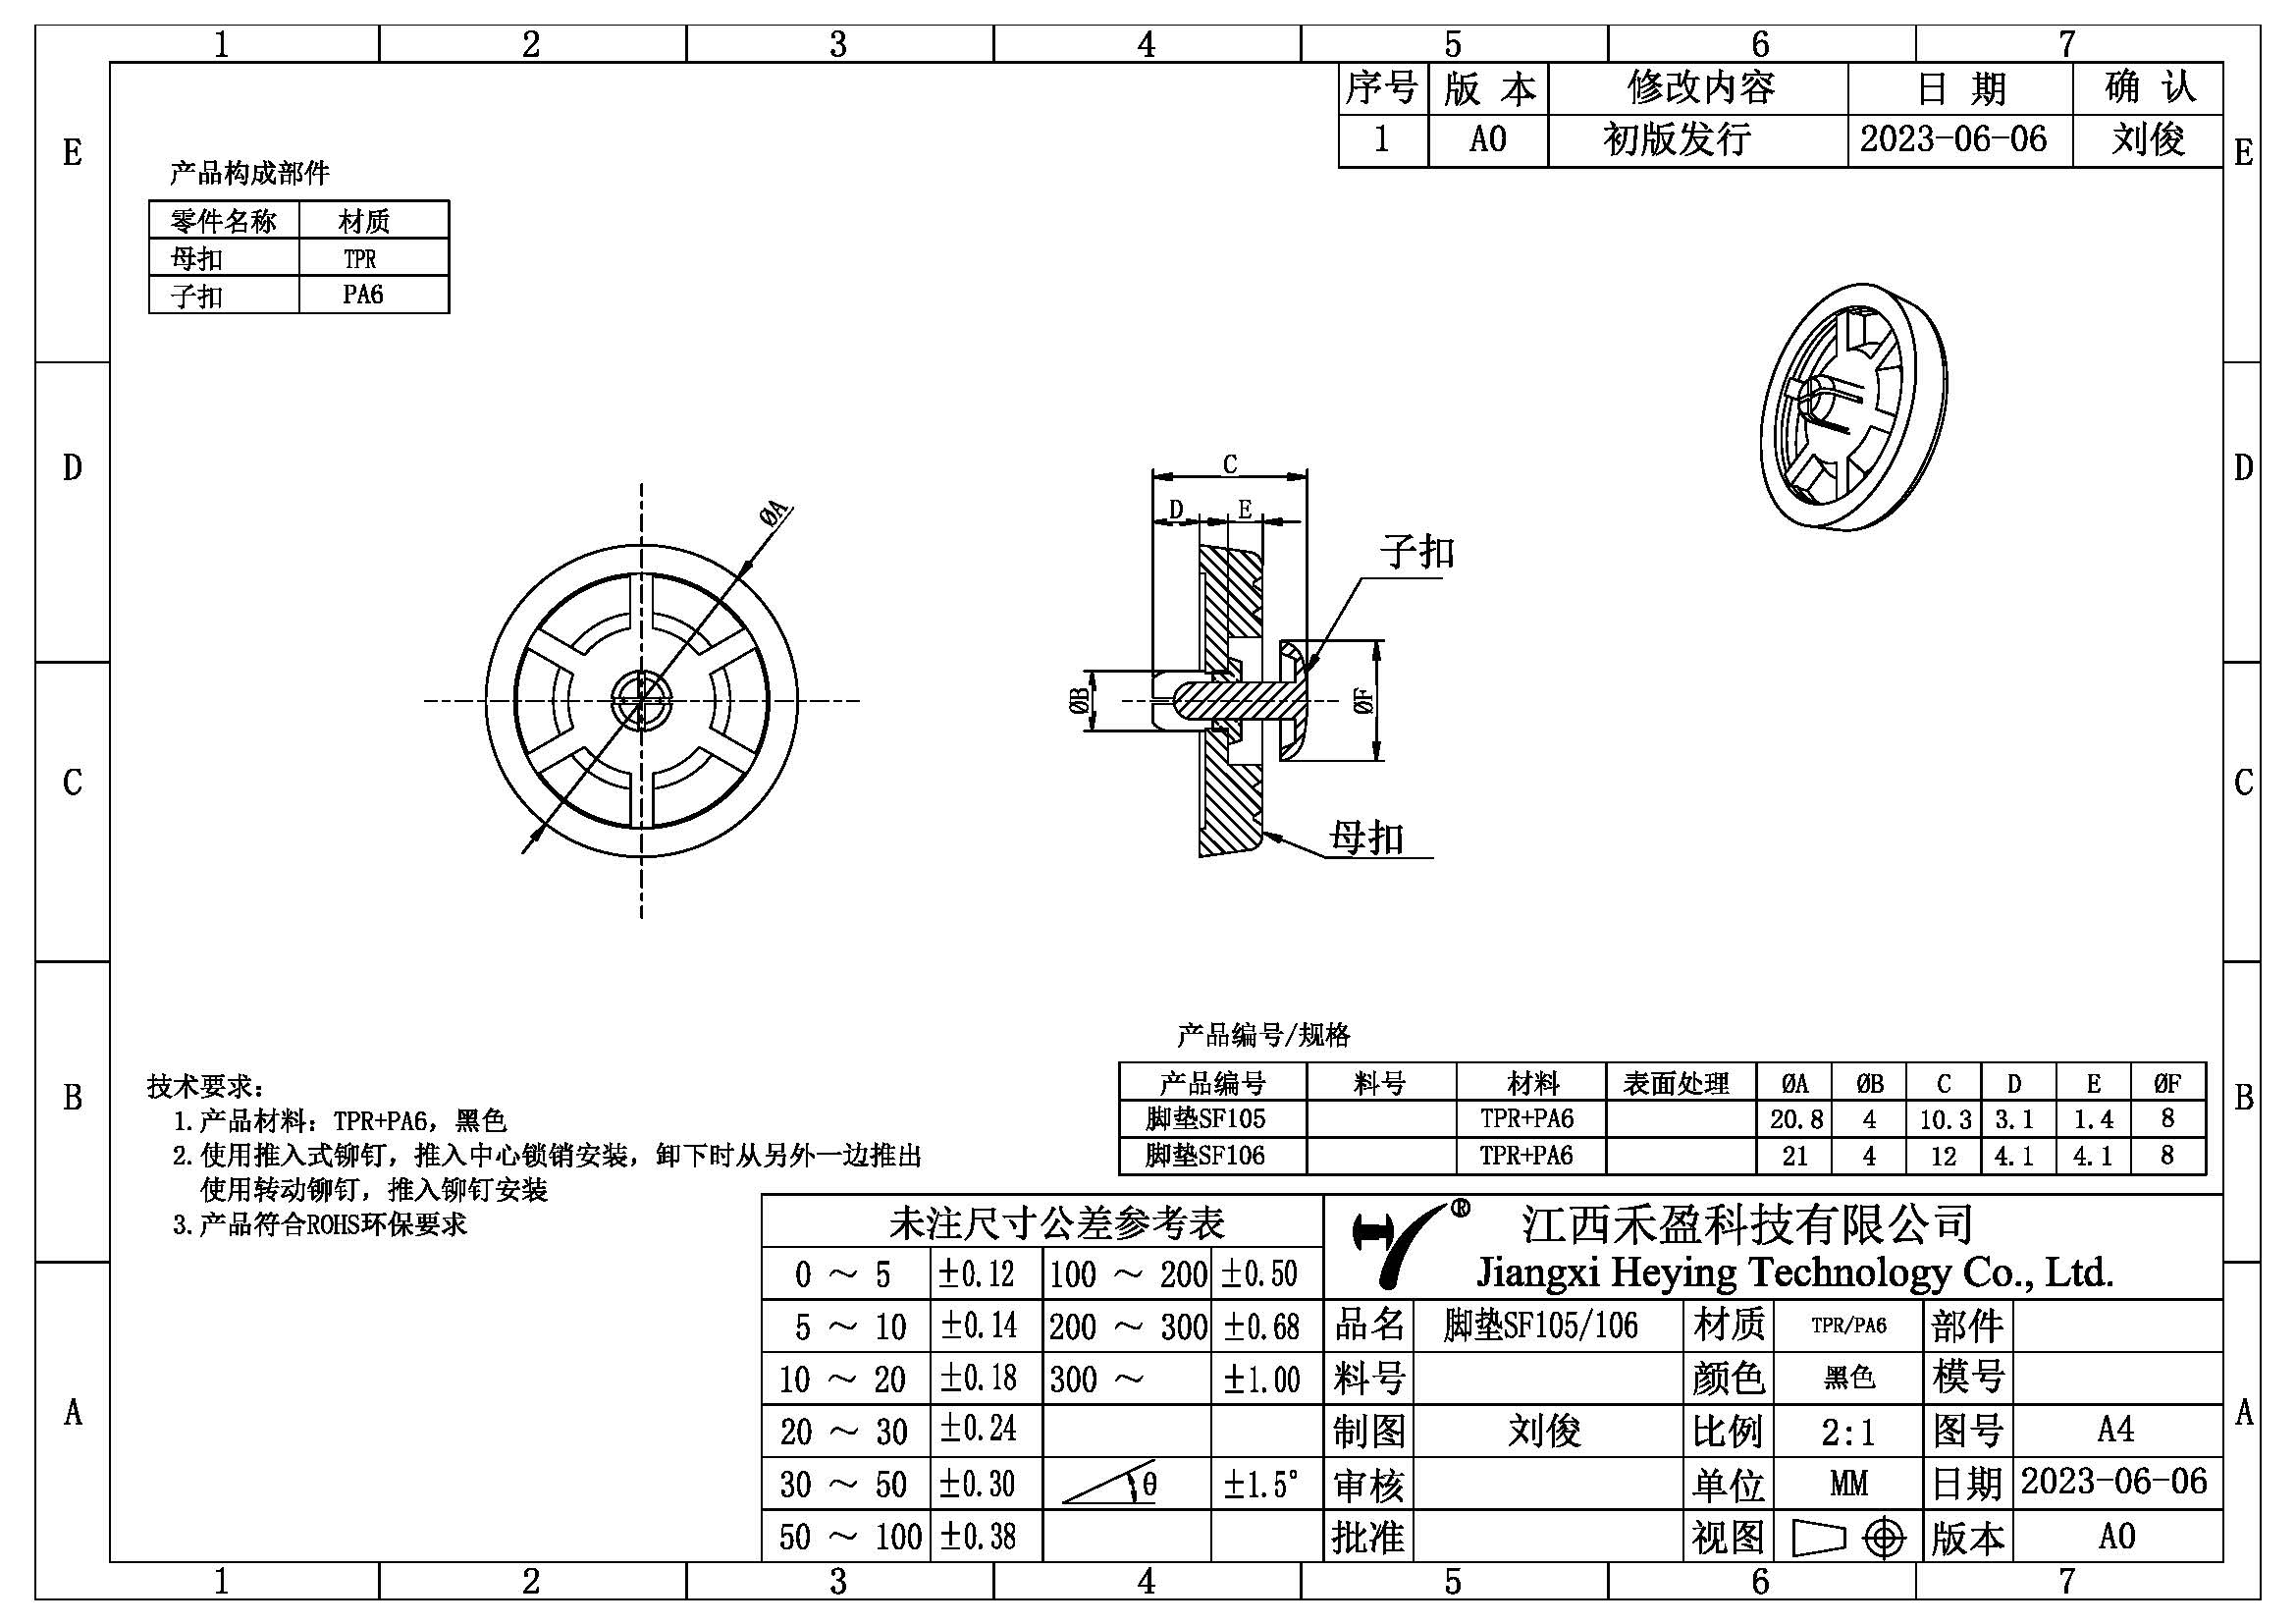 SF105 106-產品規格簡圖-20230606-模型.jpg